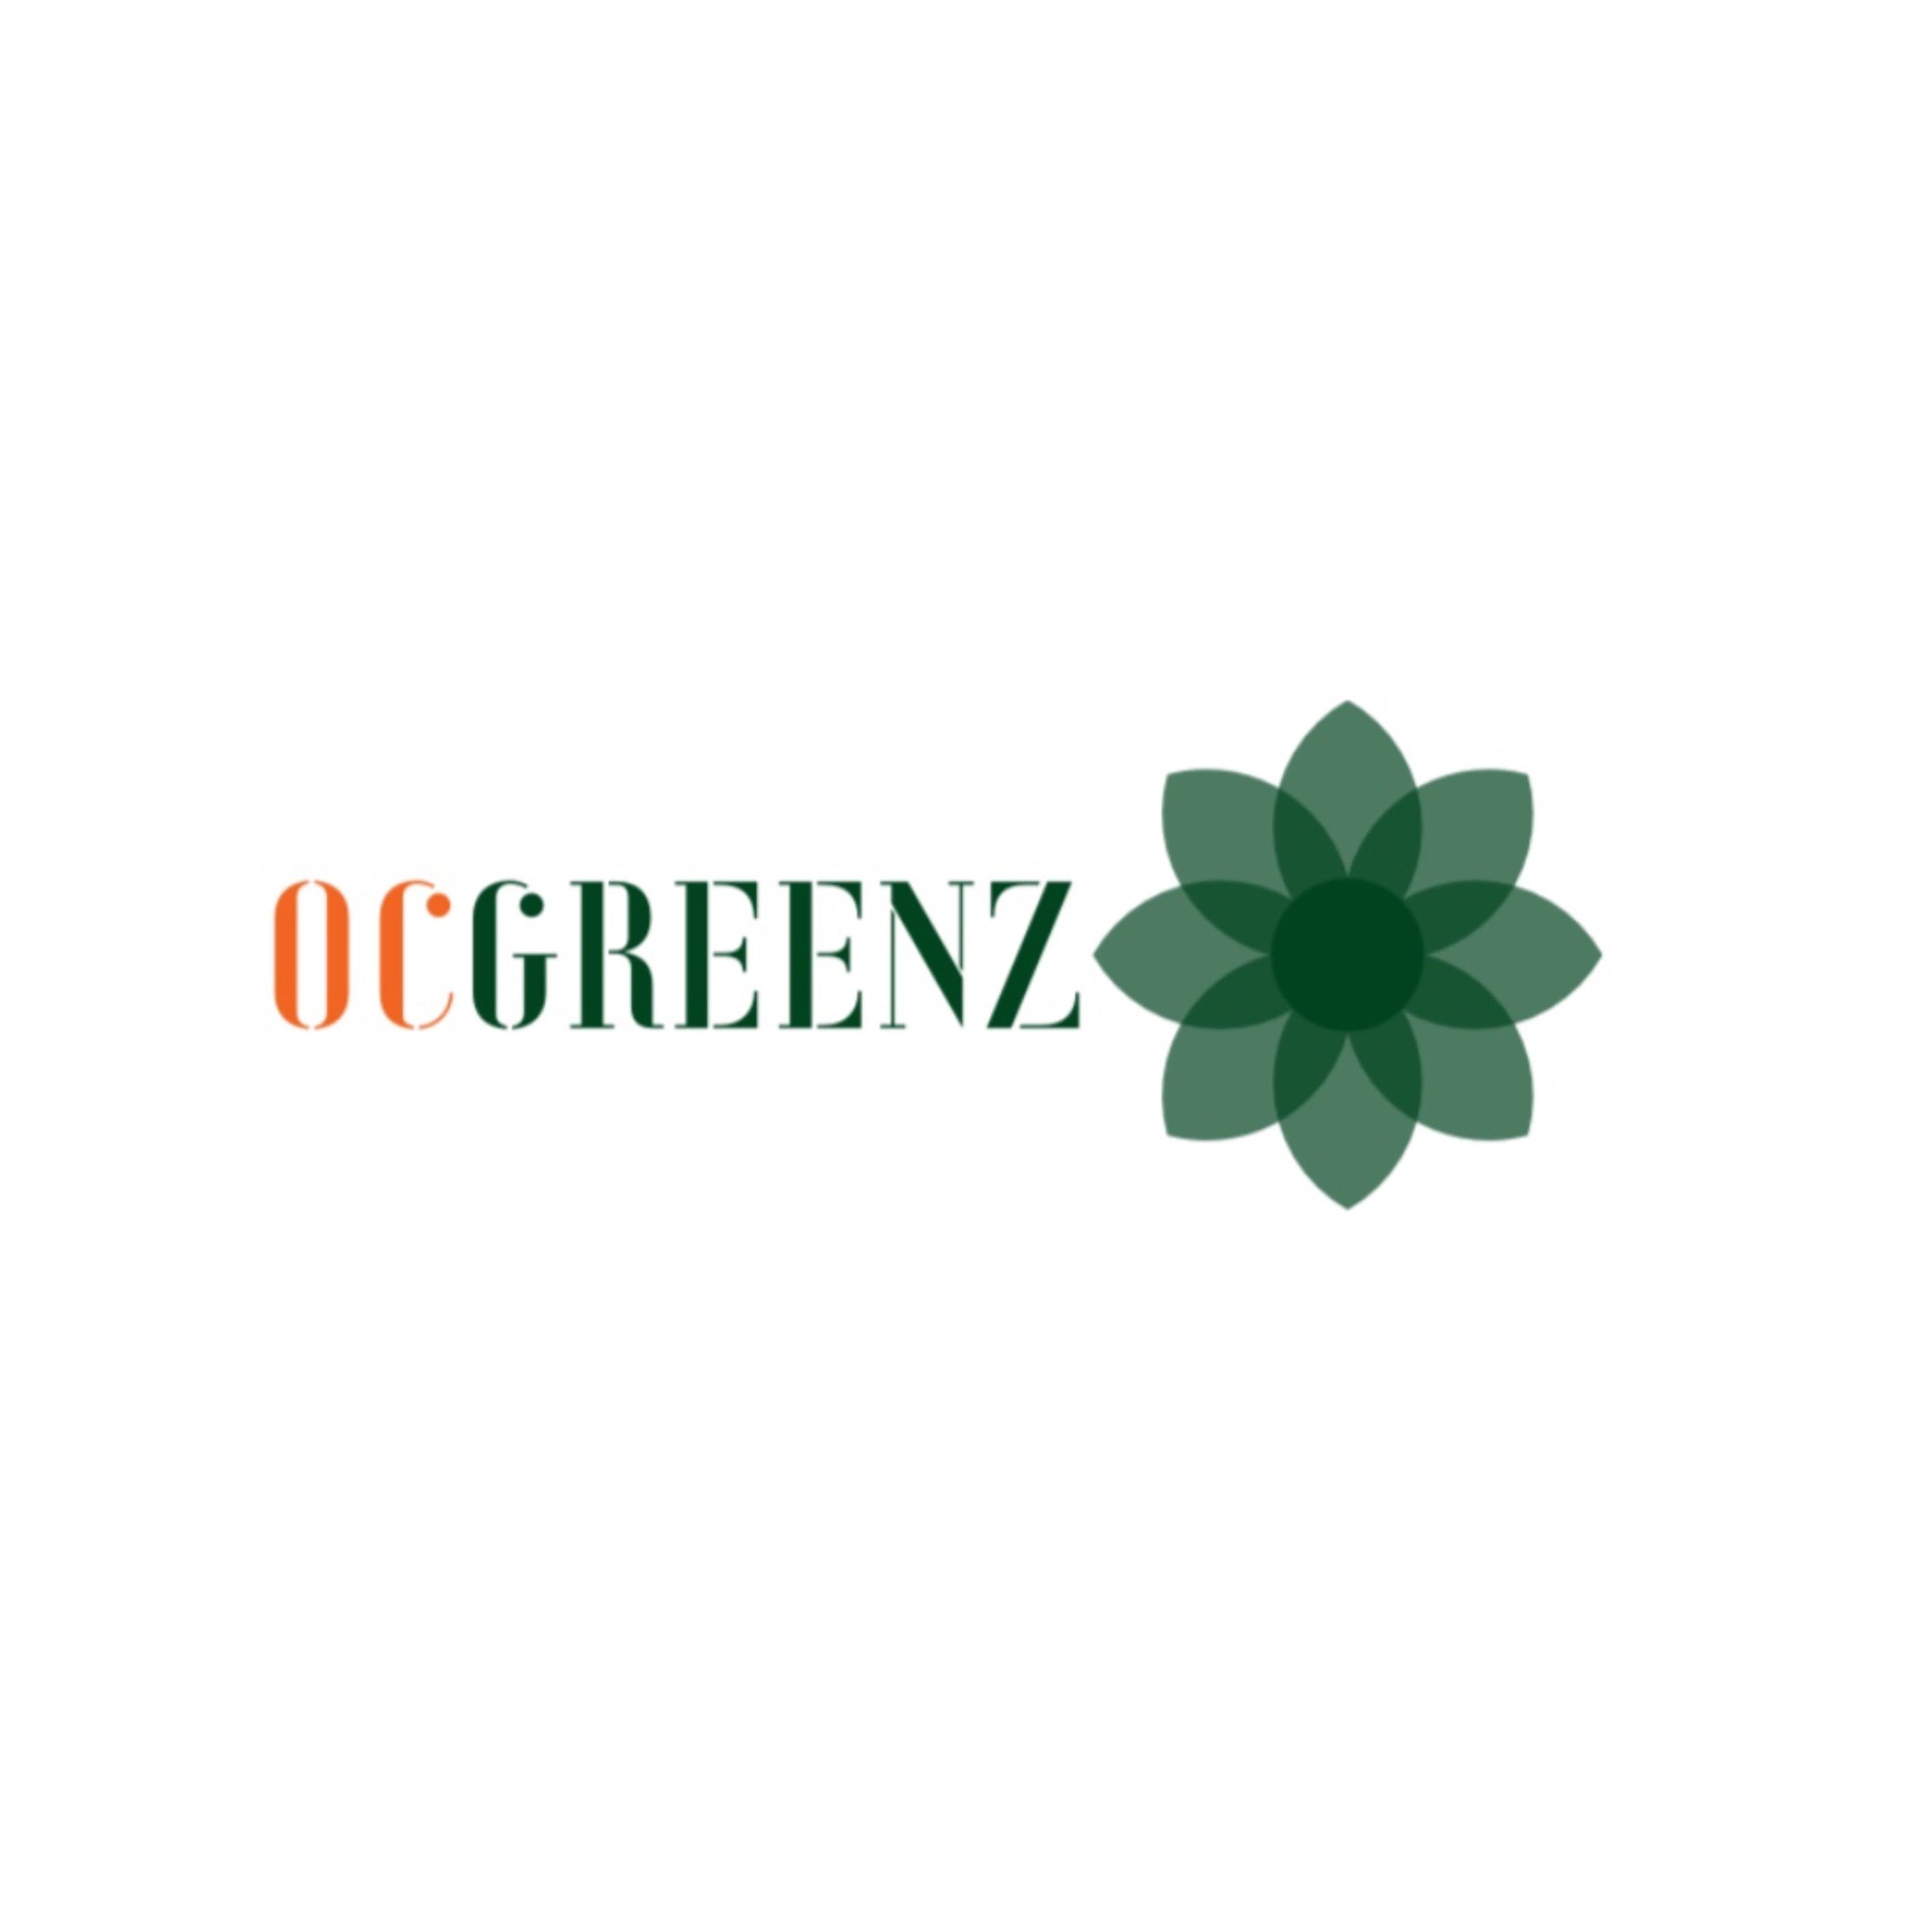 OCGREENZ - Medical Marijuana Doctors - Cannabizme.com